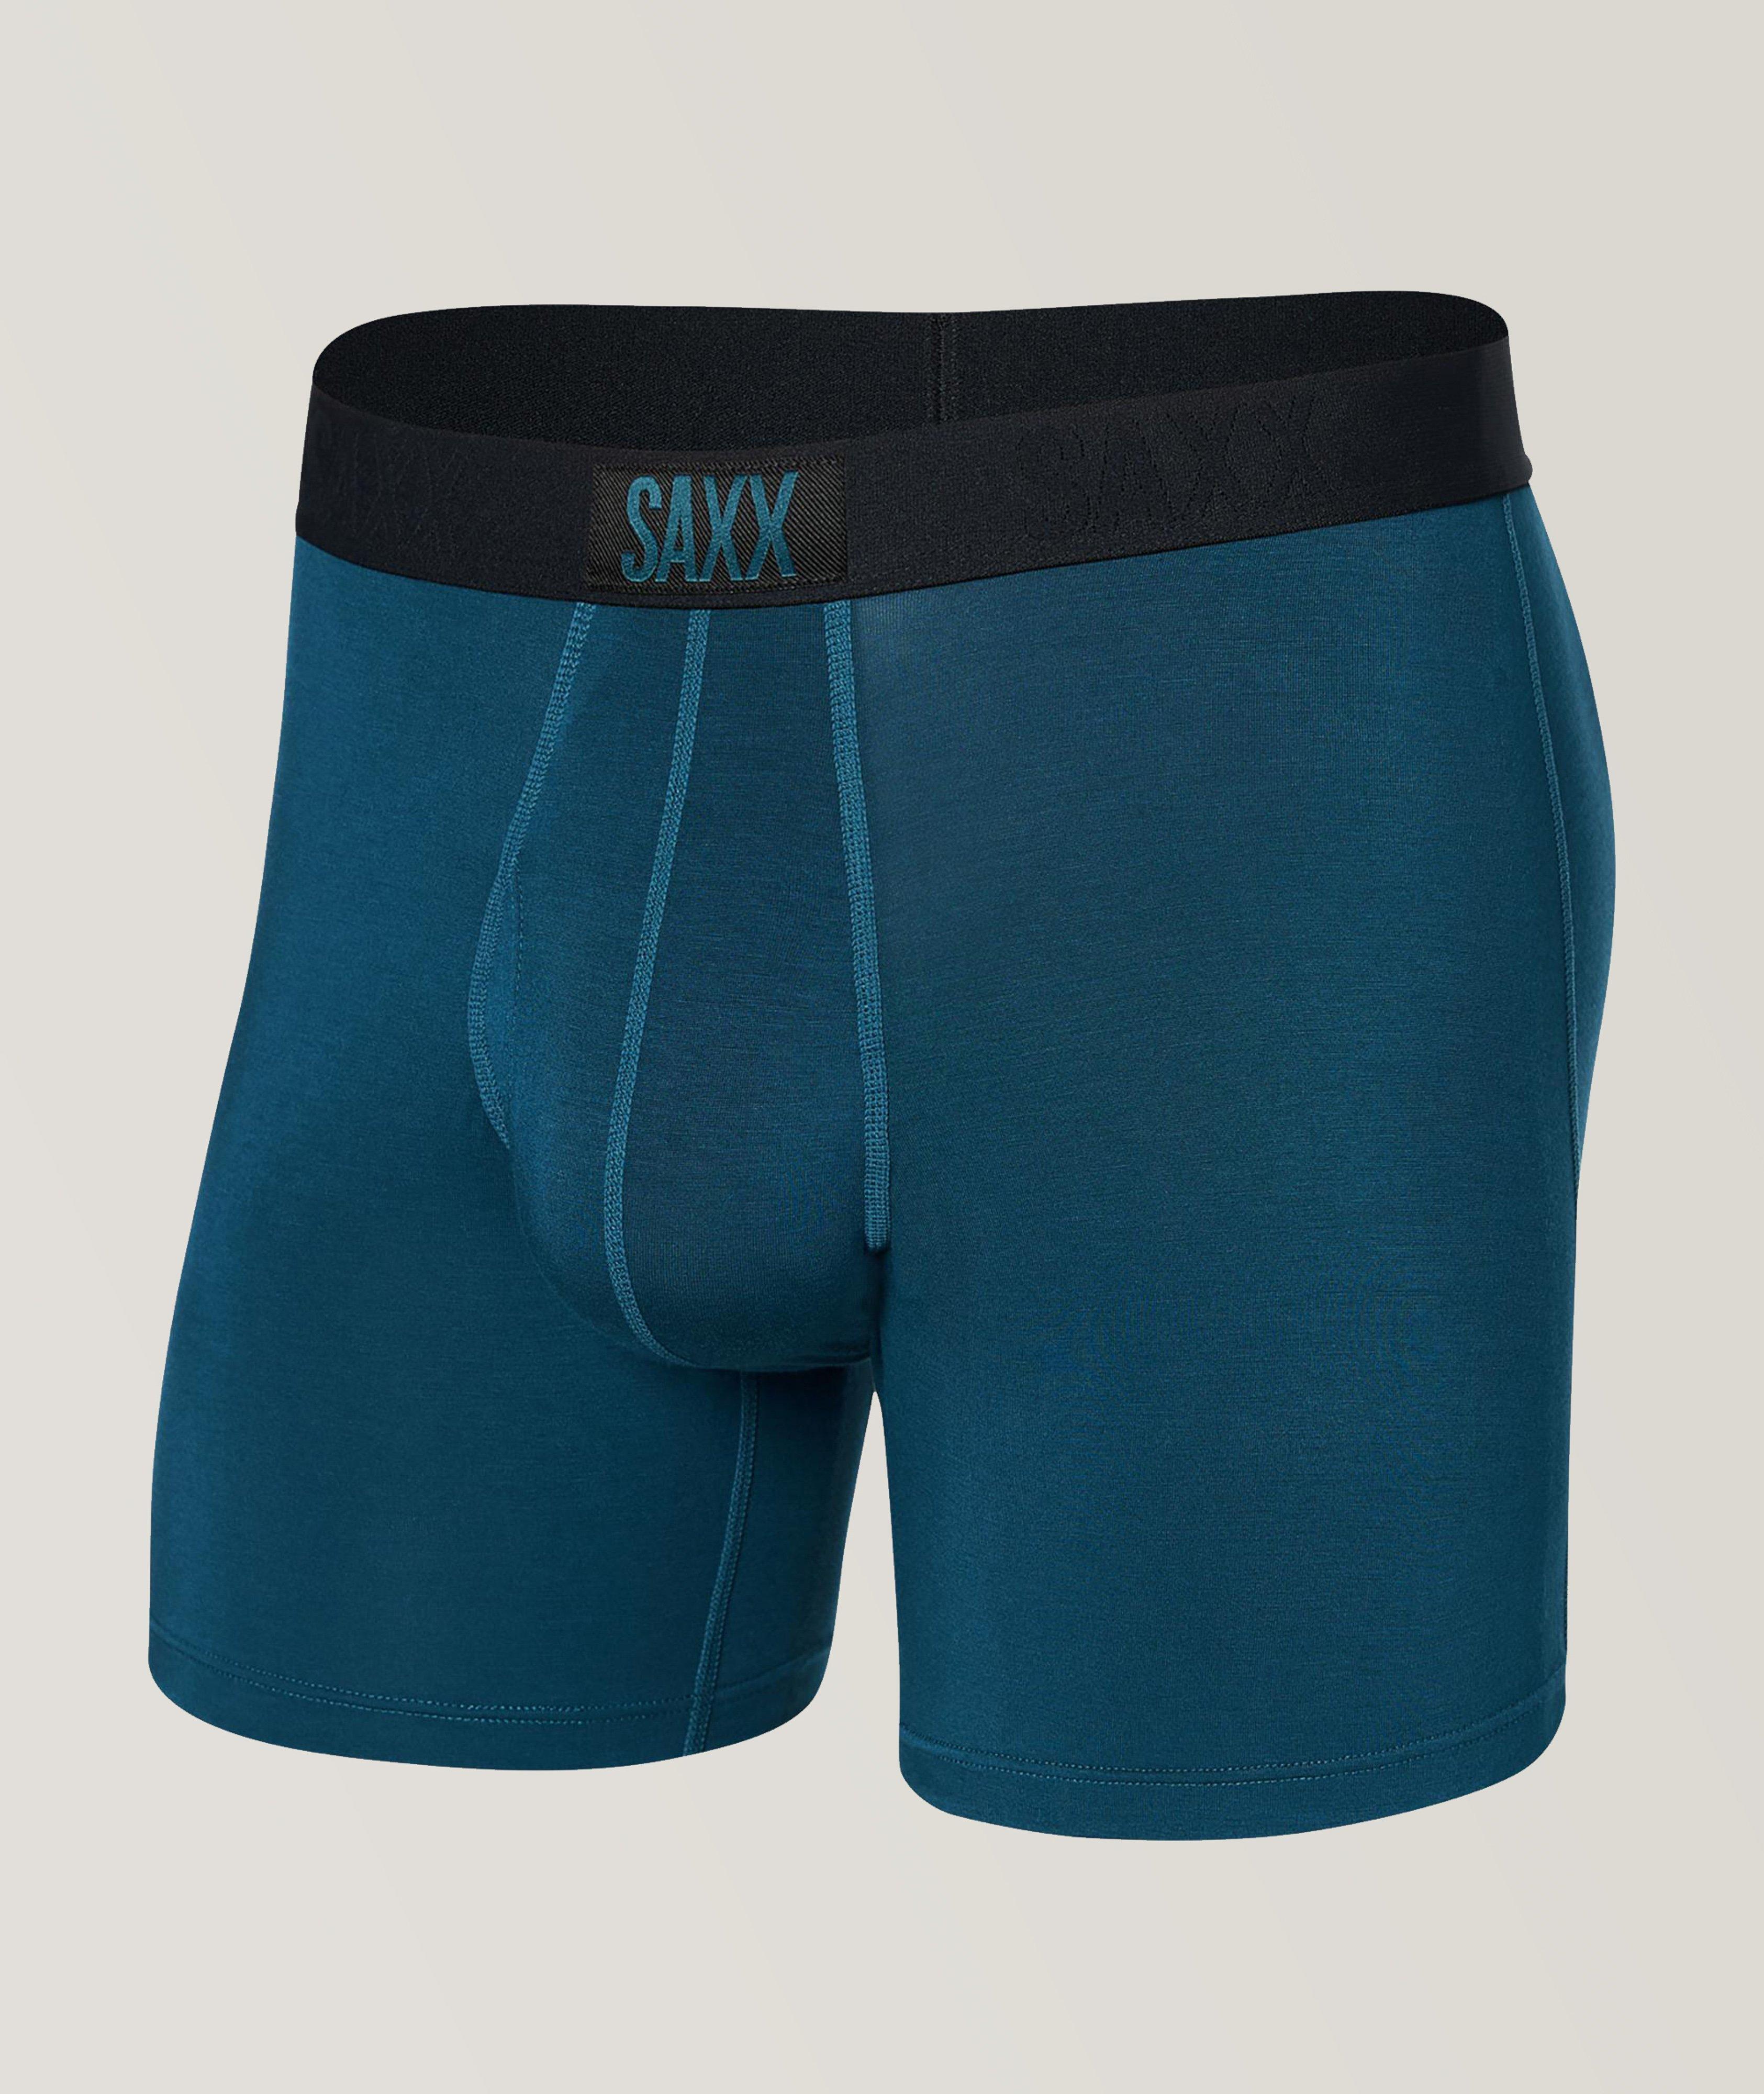 SAXX Ultra Technical Boxer Briefs | Underwear | Harry Rosen